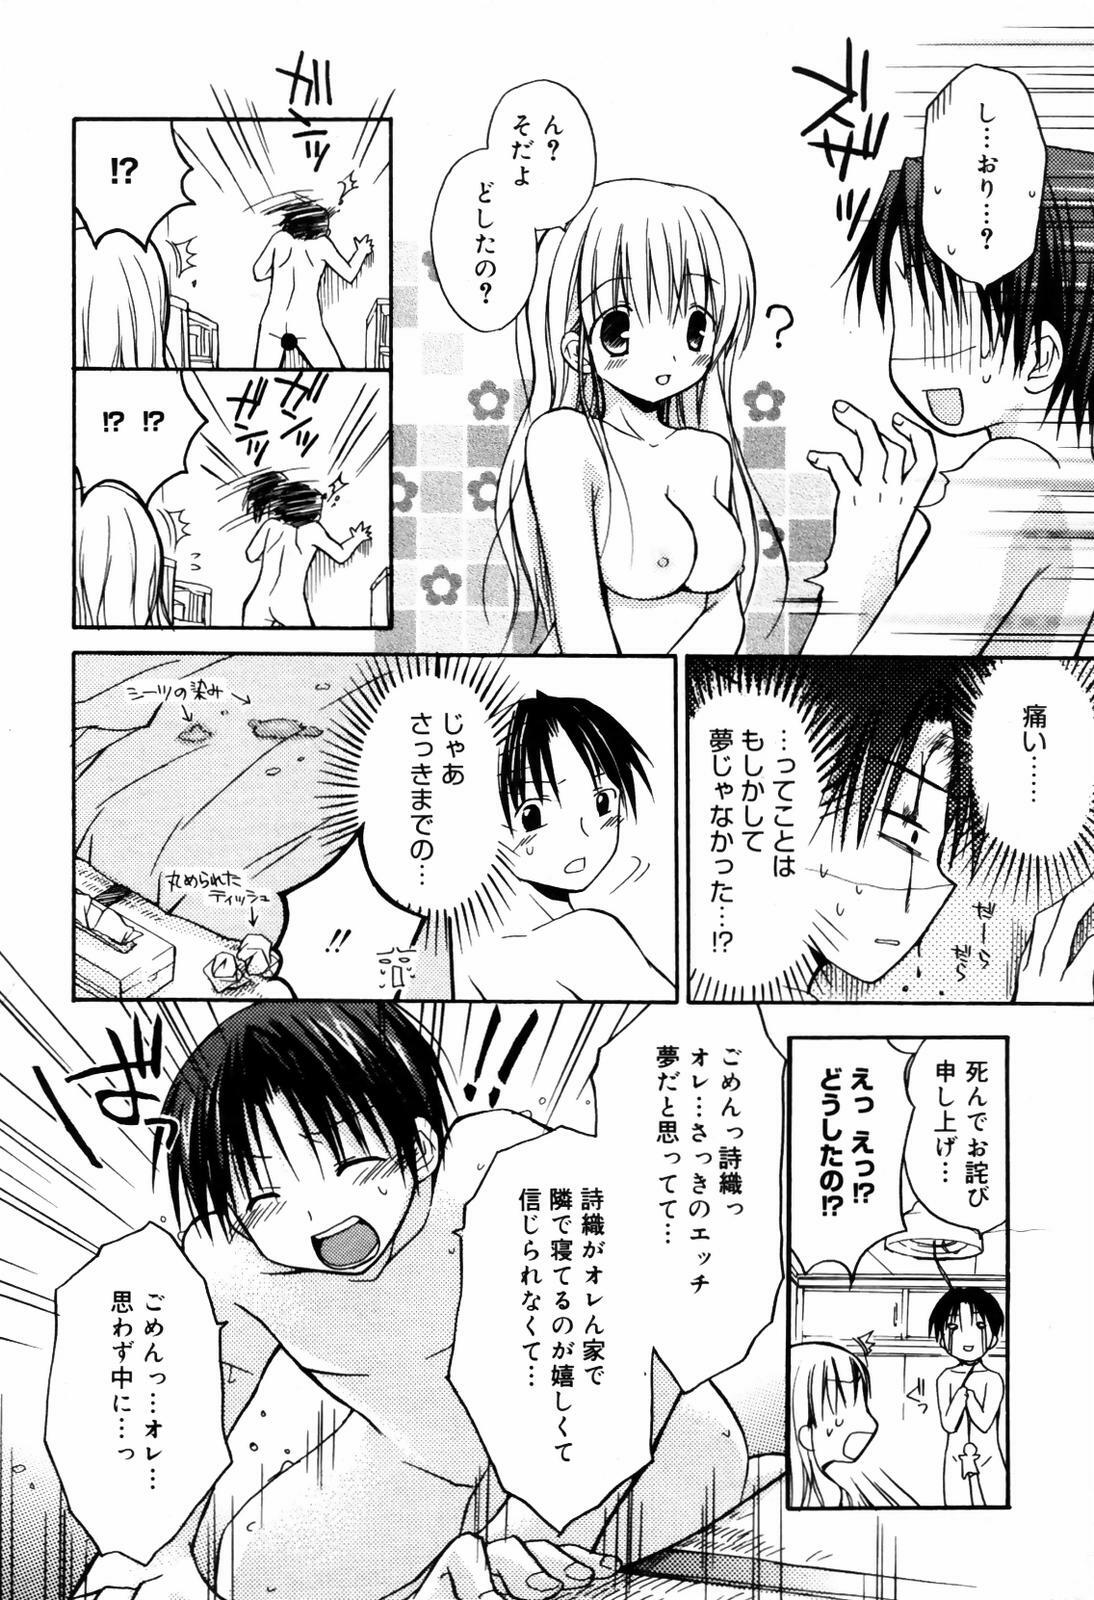 Manga Bangaichi 2007-09 page 12 full